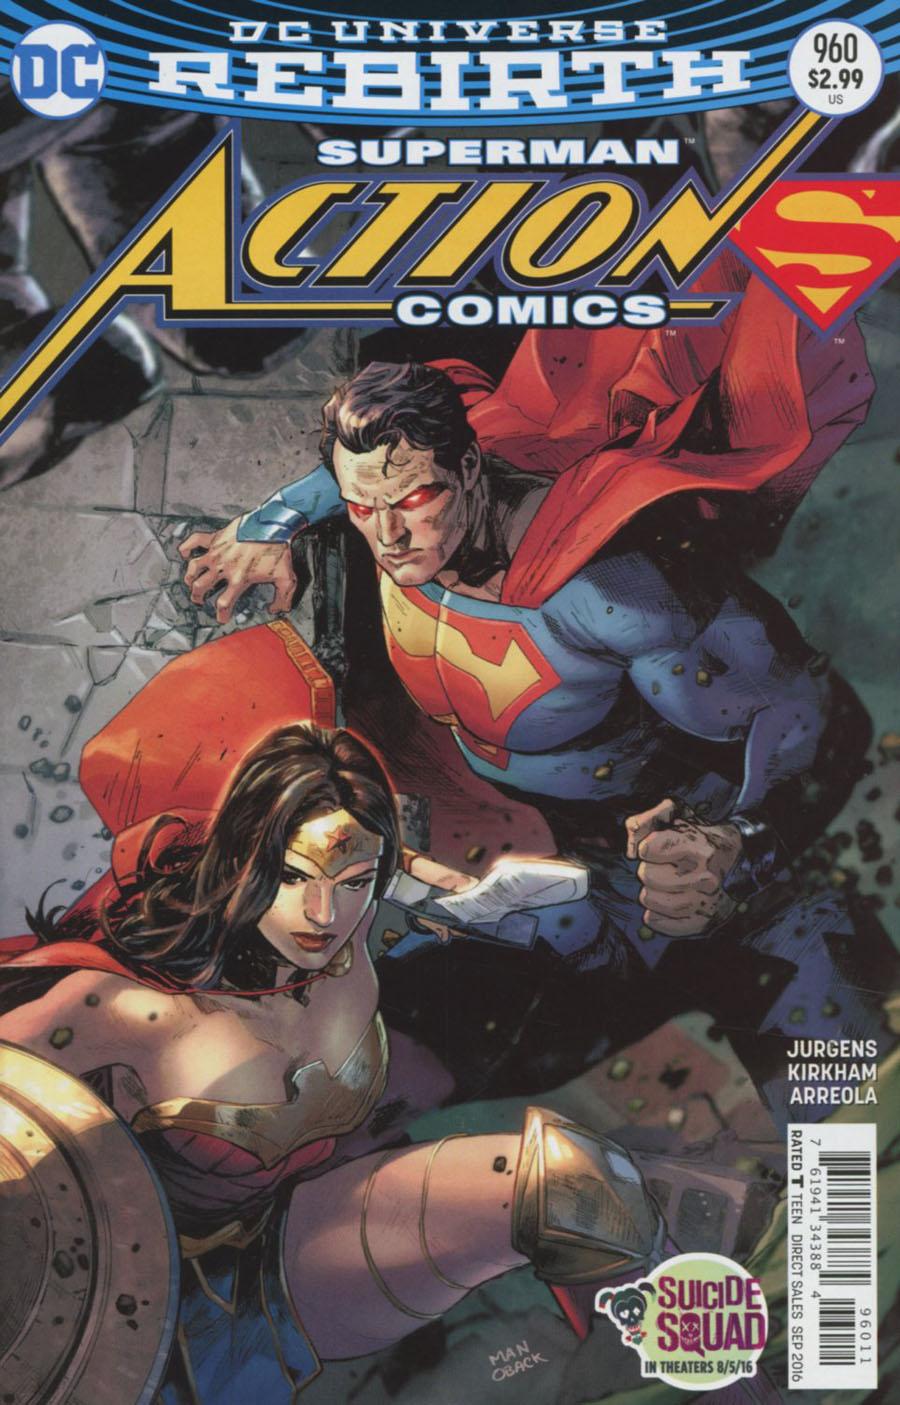 Action Comics Vol. 2 #960